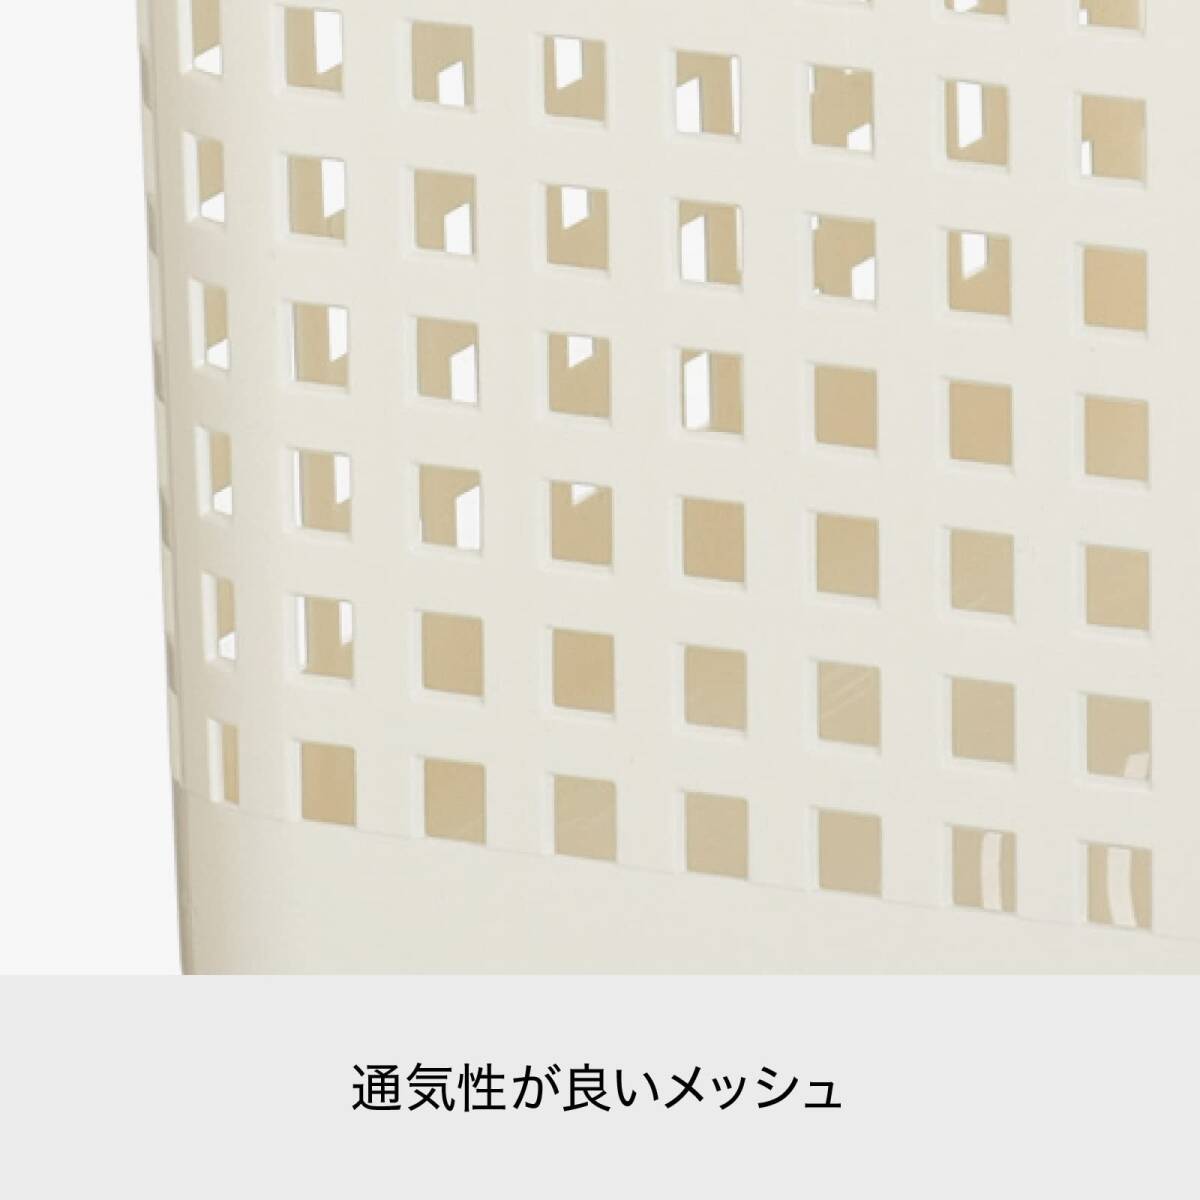  Like ito(like-it) прачечная место хранения стирка держать рука имеется корзина S примерно ширина 26.5 внутри 39.2 высота 22.3cm Brown сделано в Японии 